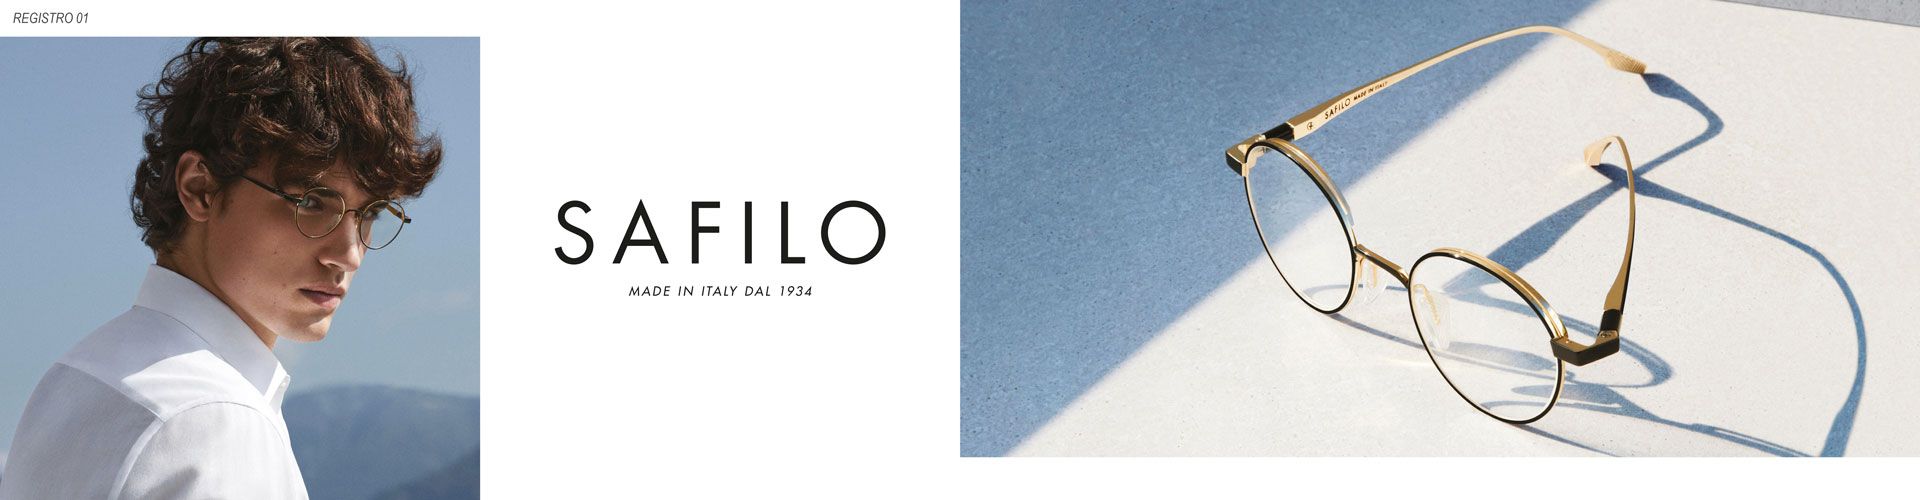 Shop Safilo Eyeglasses - model Registro 01 featured